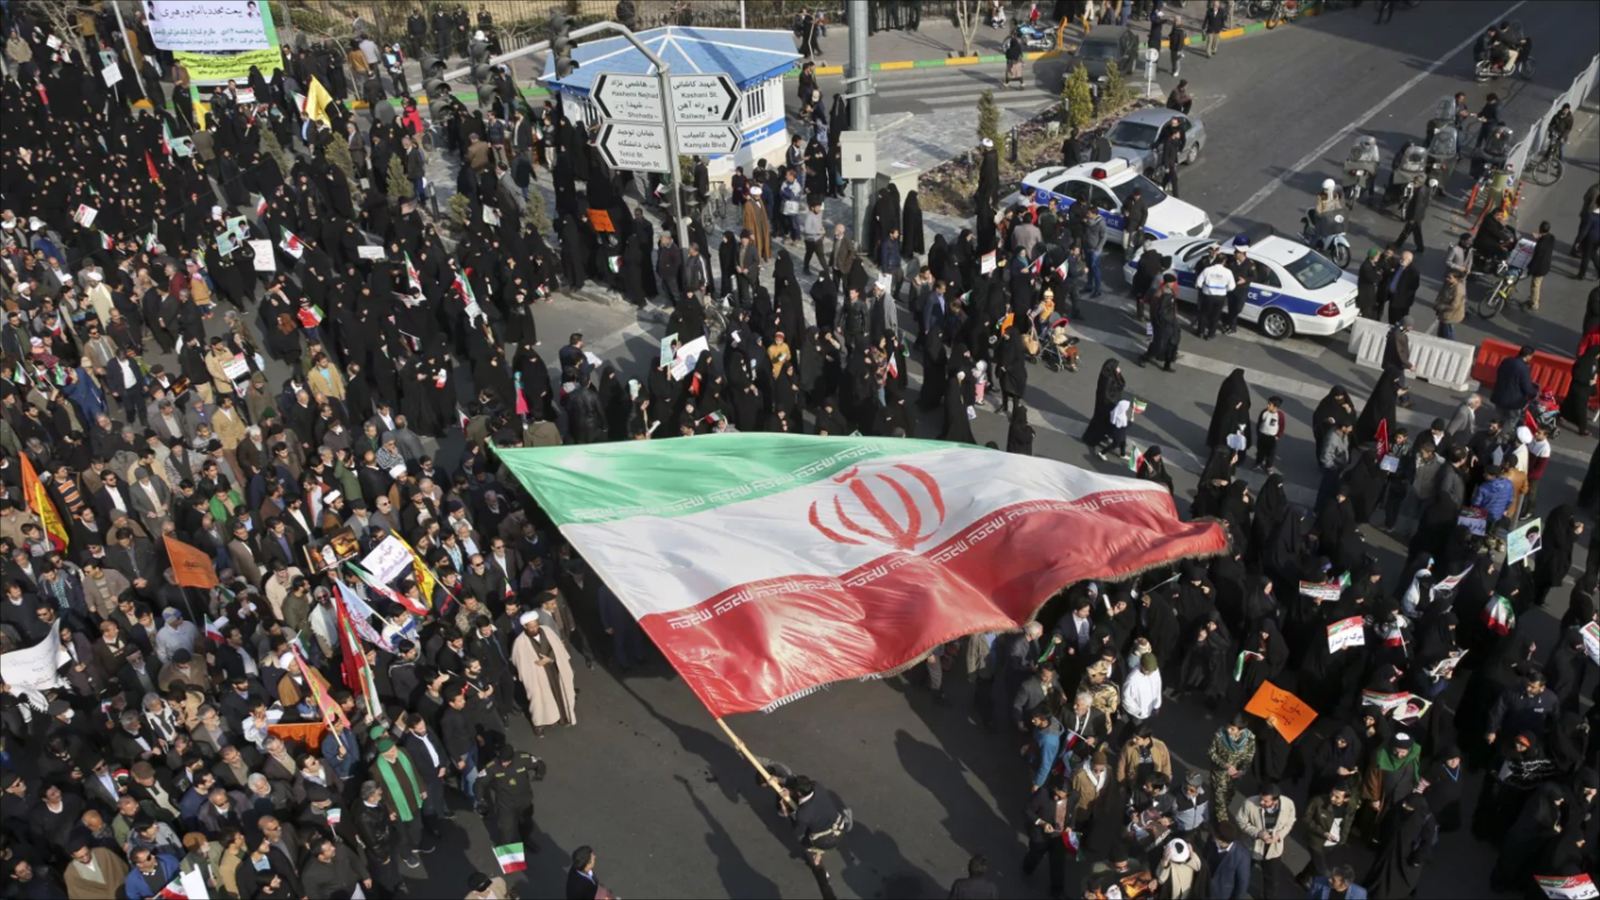 إيران تشهد مظاهرات مناهضة وأخرى مؤيدة منذ أيام (الصحافة الأميركية)